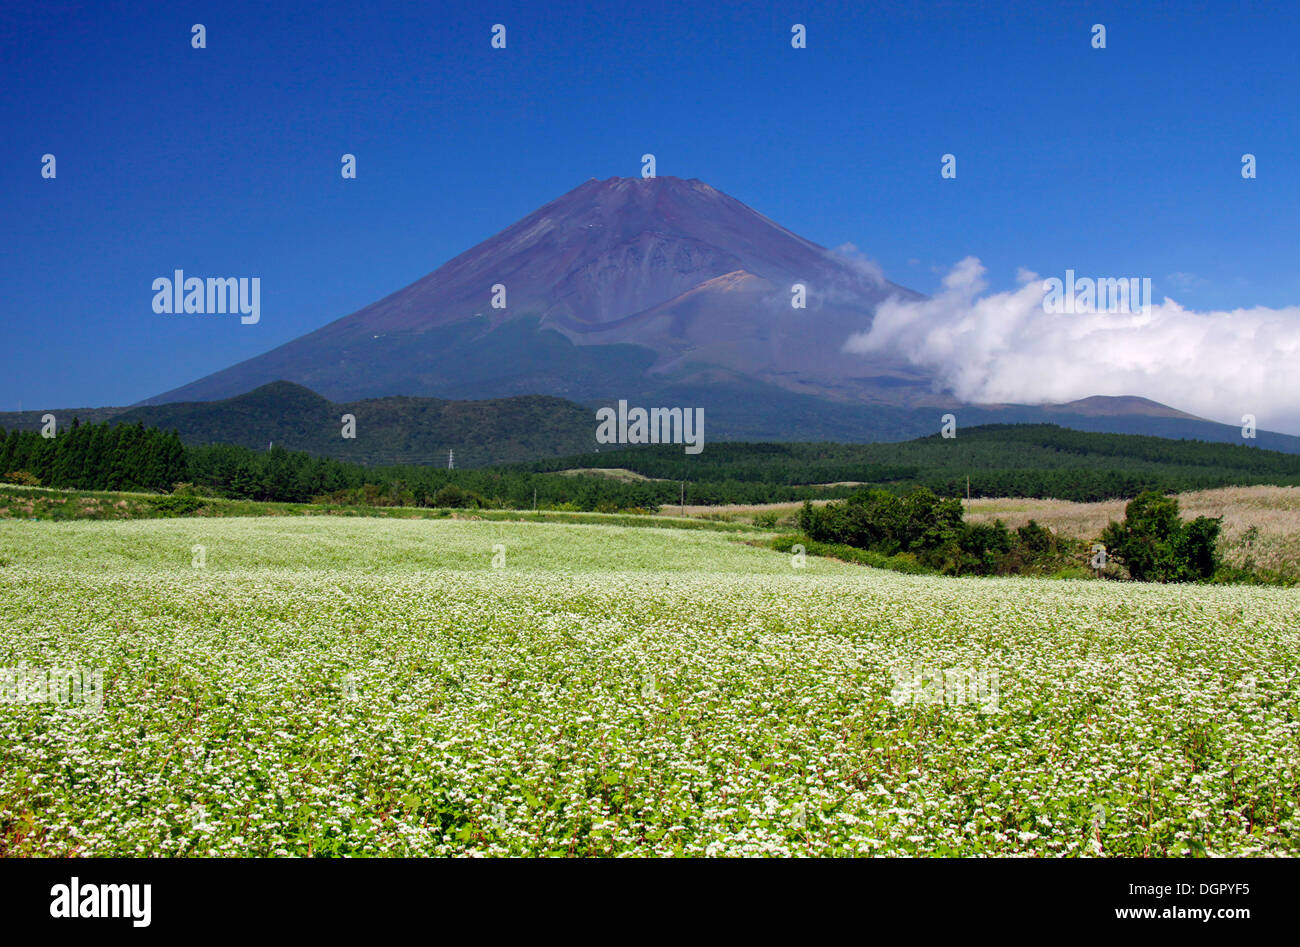 Mount Fuji and buckwheat field Shizuoka Japan Stock Photo